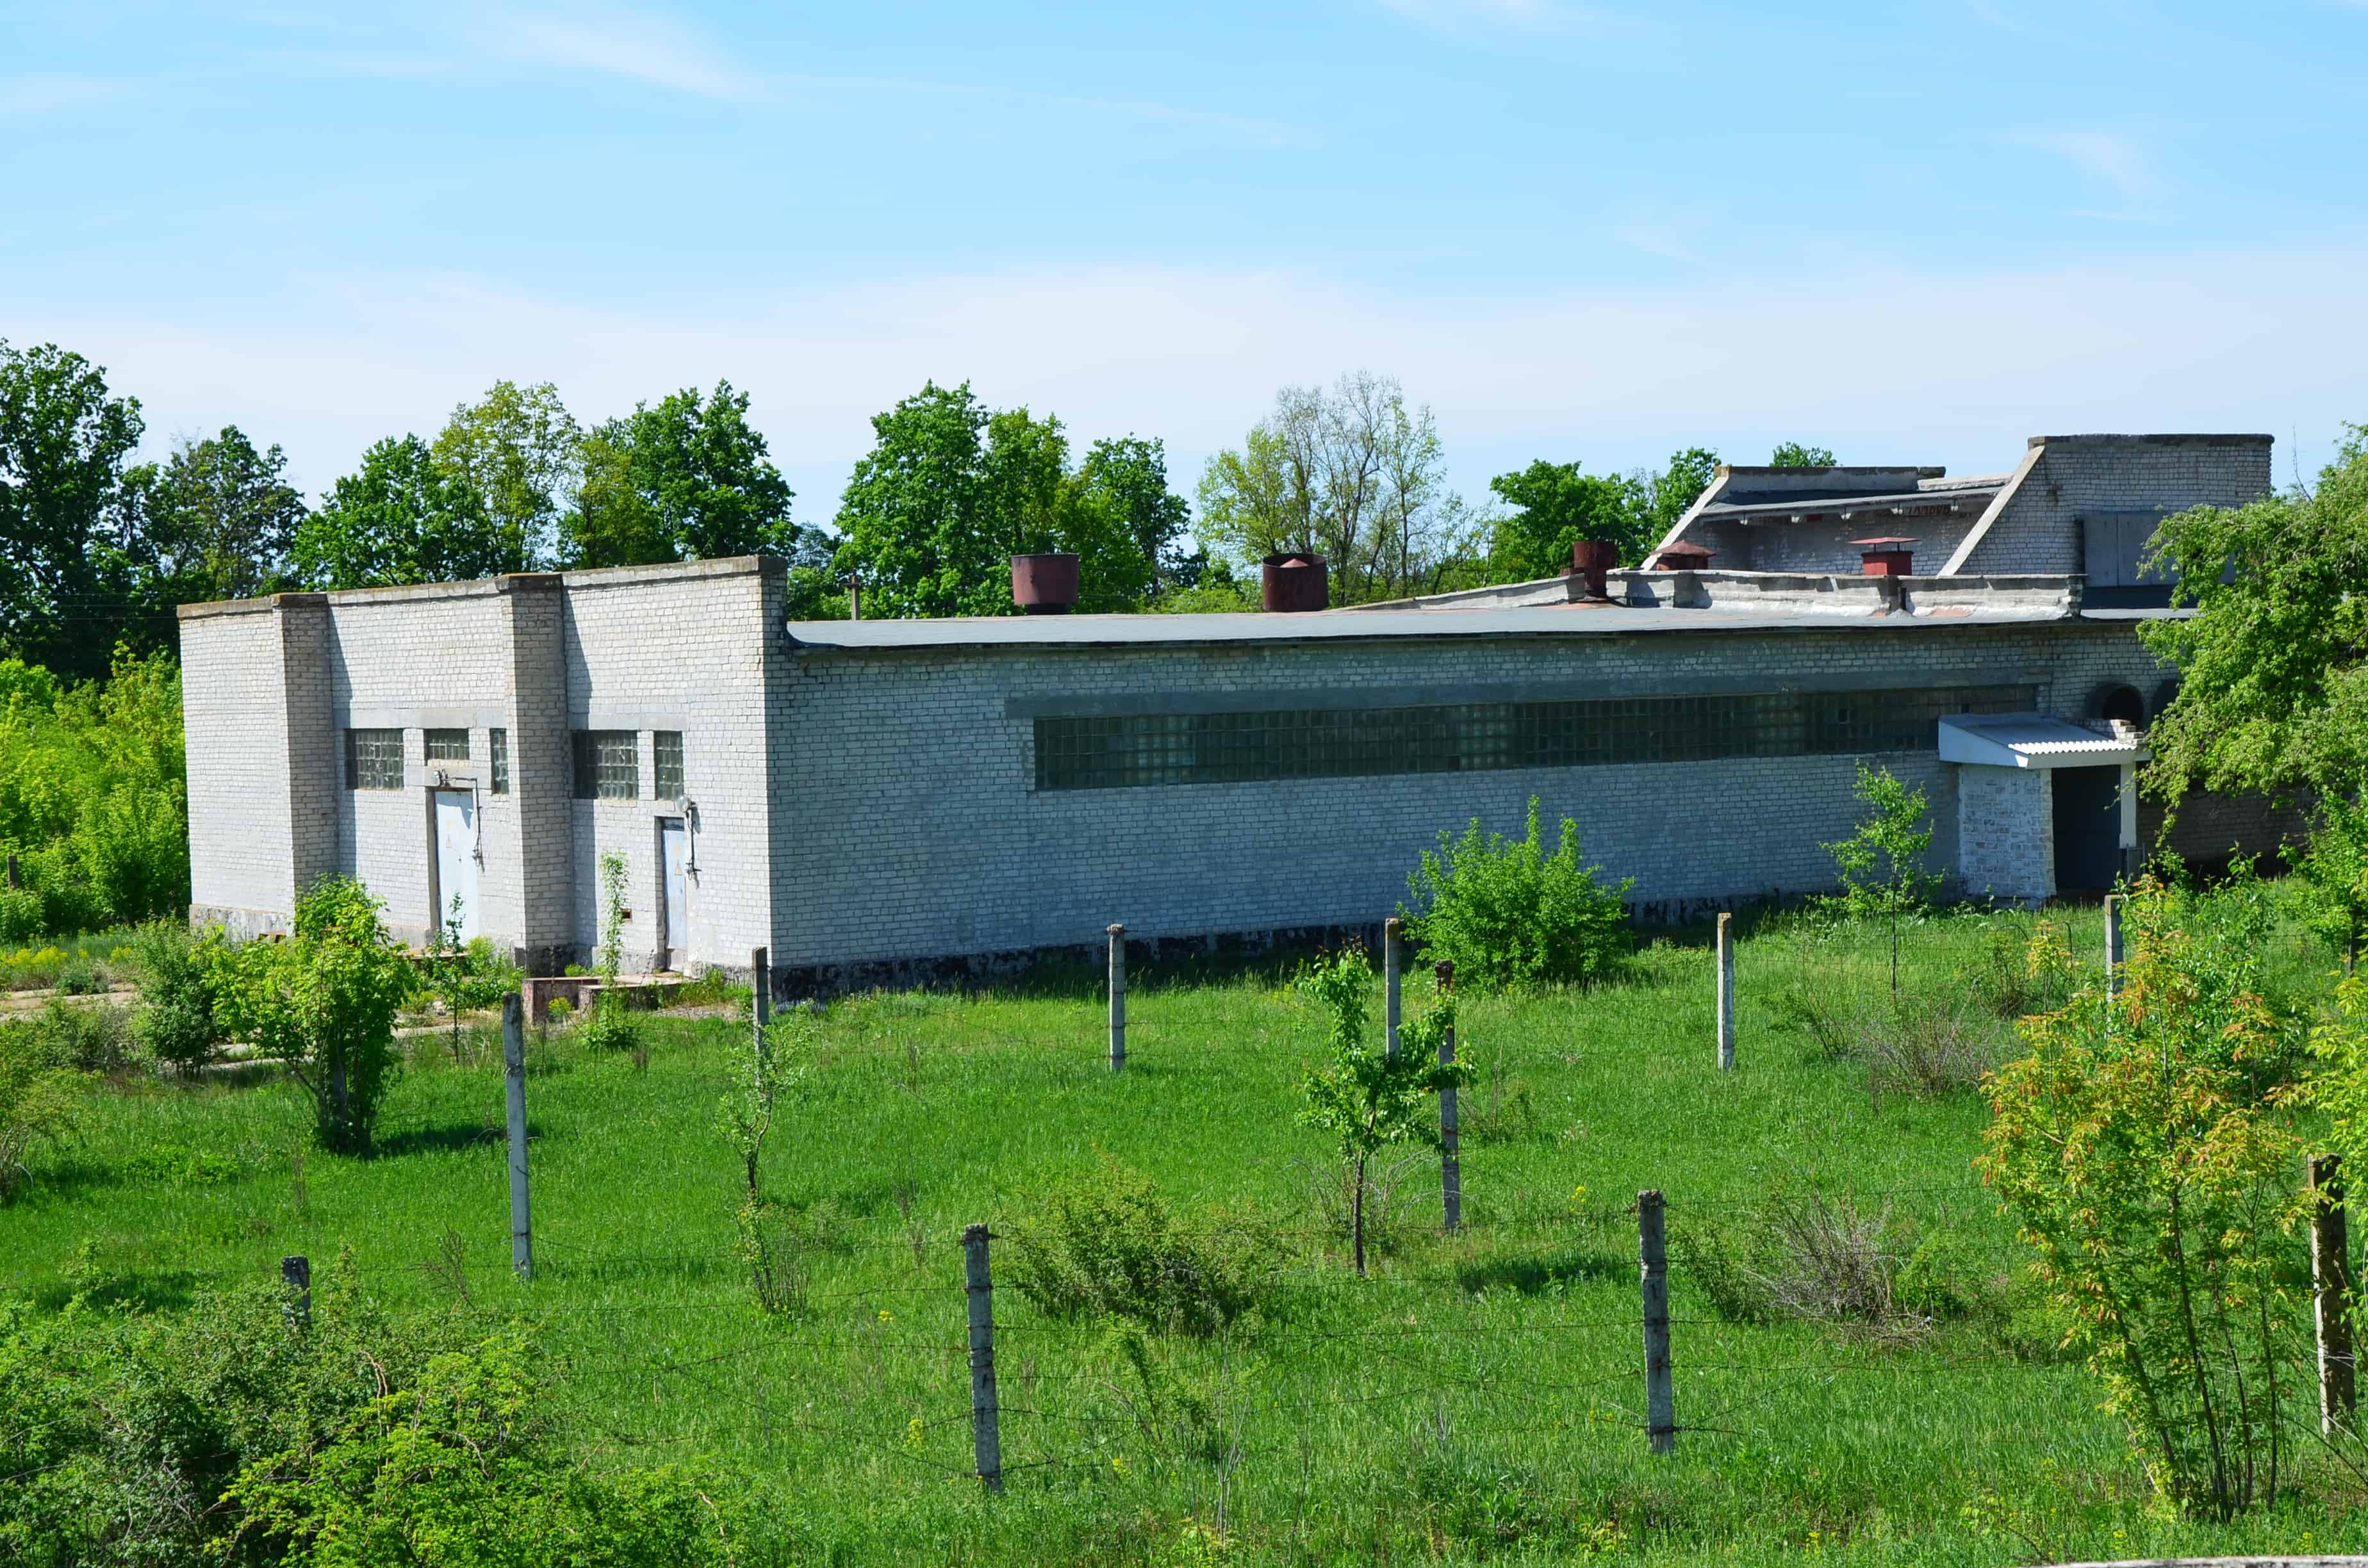 Powerhouse at Strategic Missile Forces Museum near Pobuzke, Ukraine